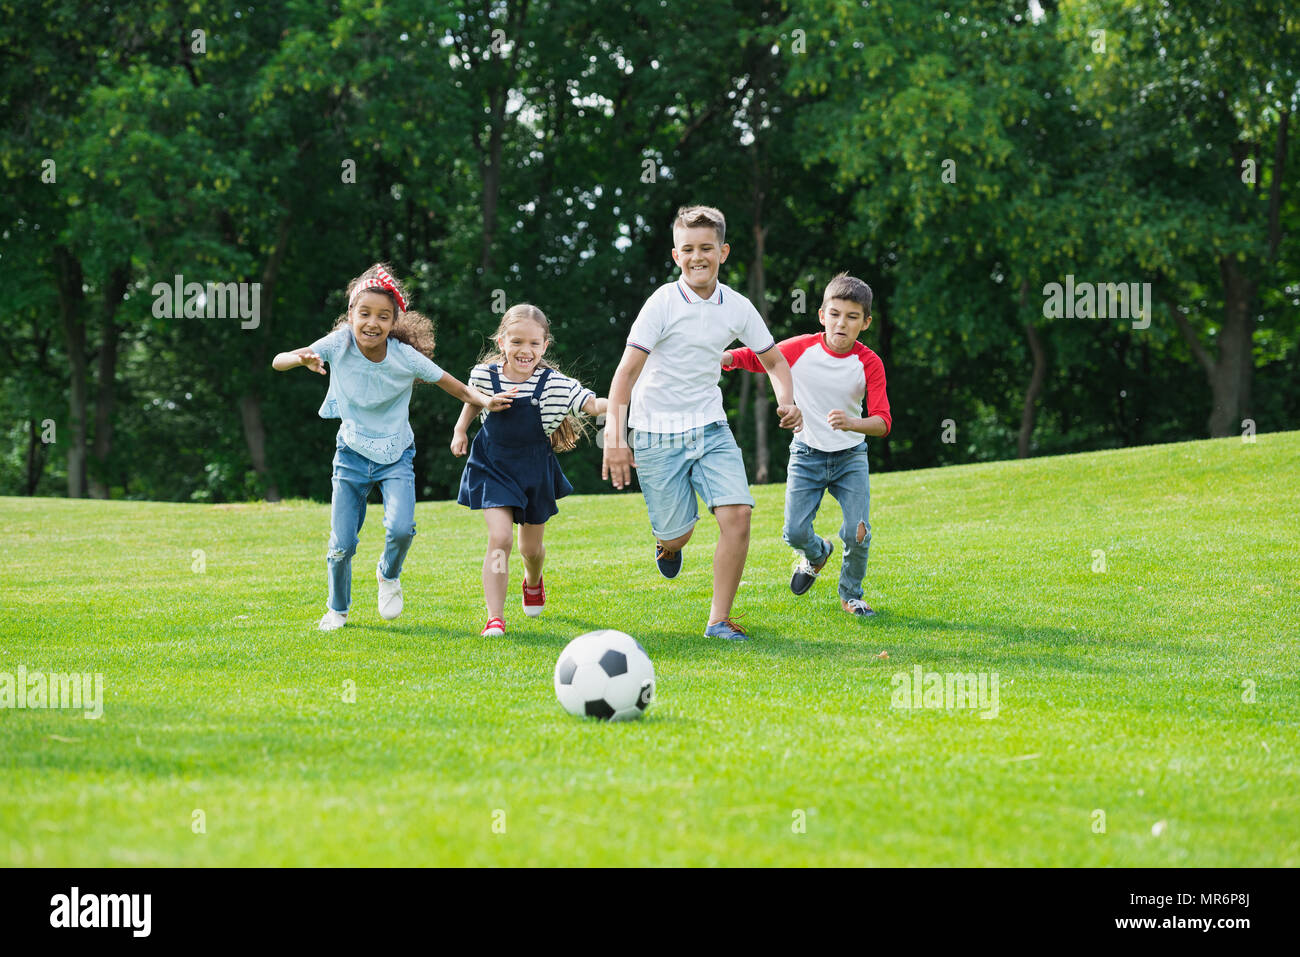 Happy Cute kids multiethnique à jouer au soccer avec ball in park Banque D'Images